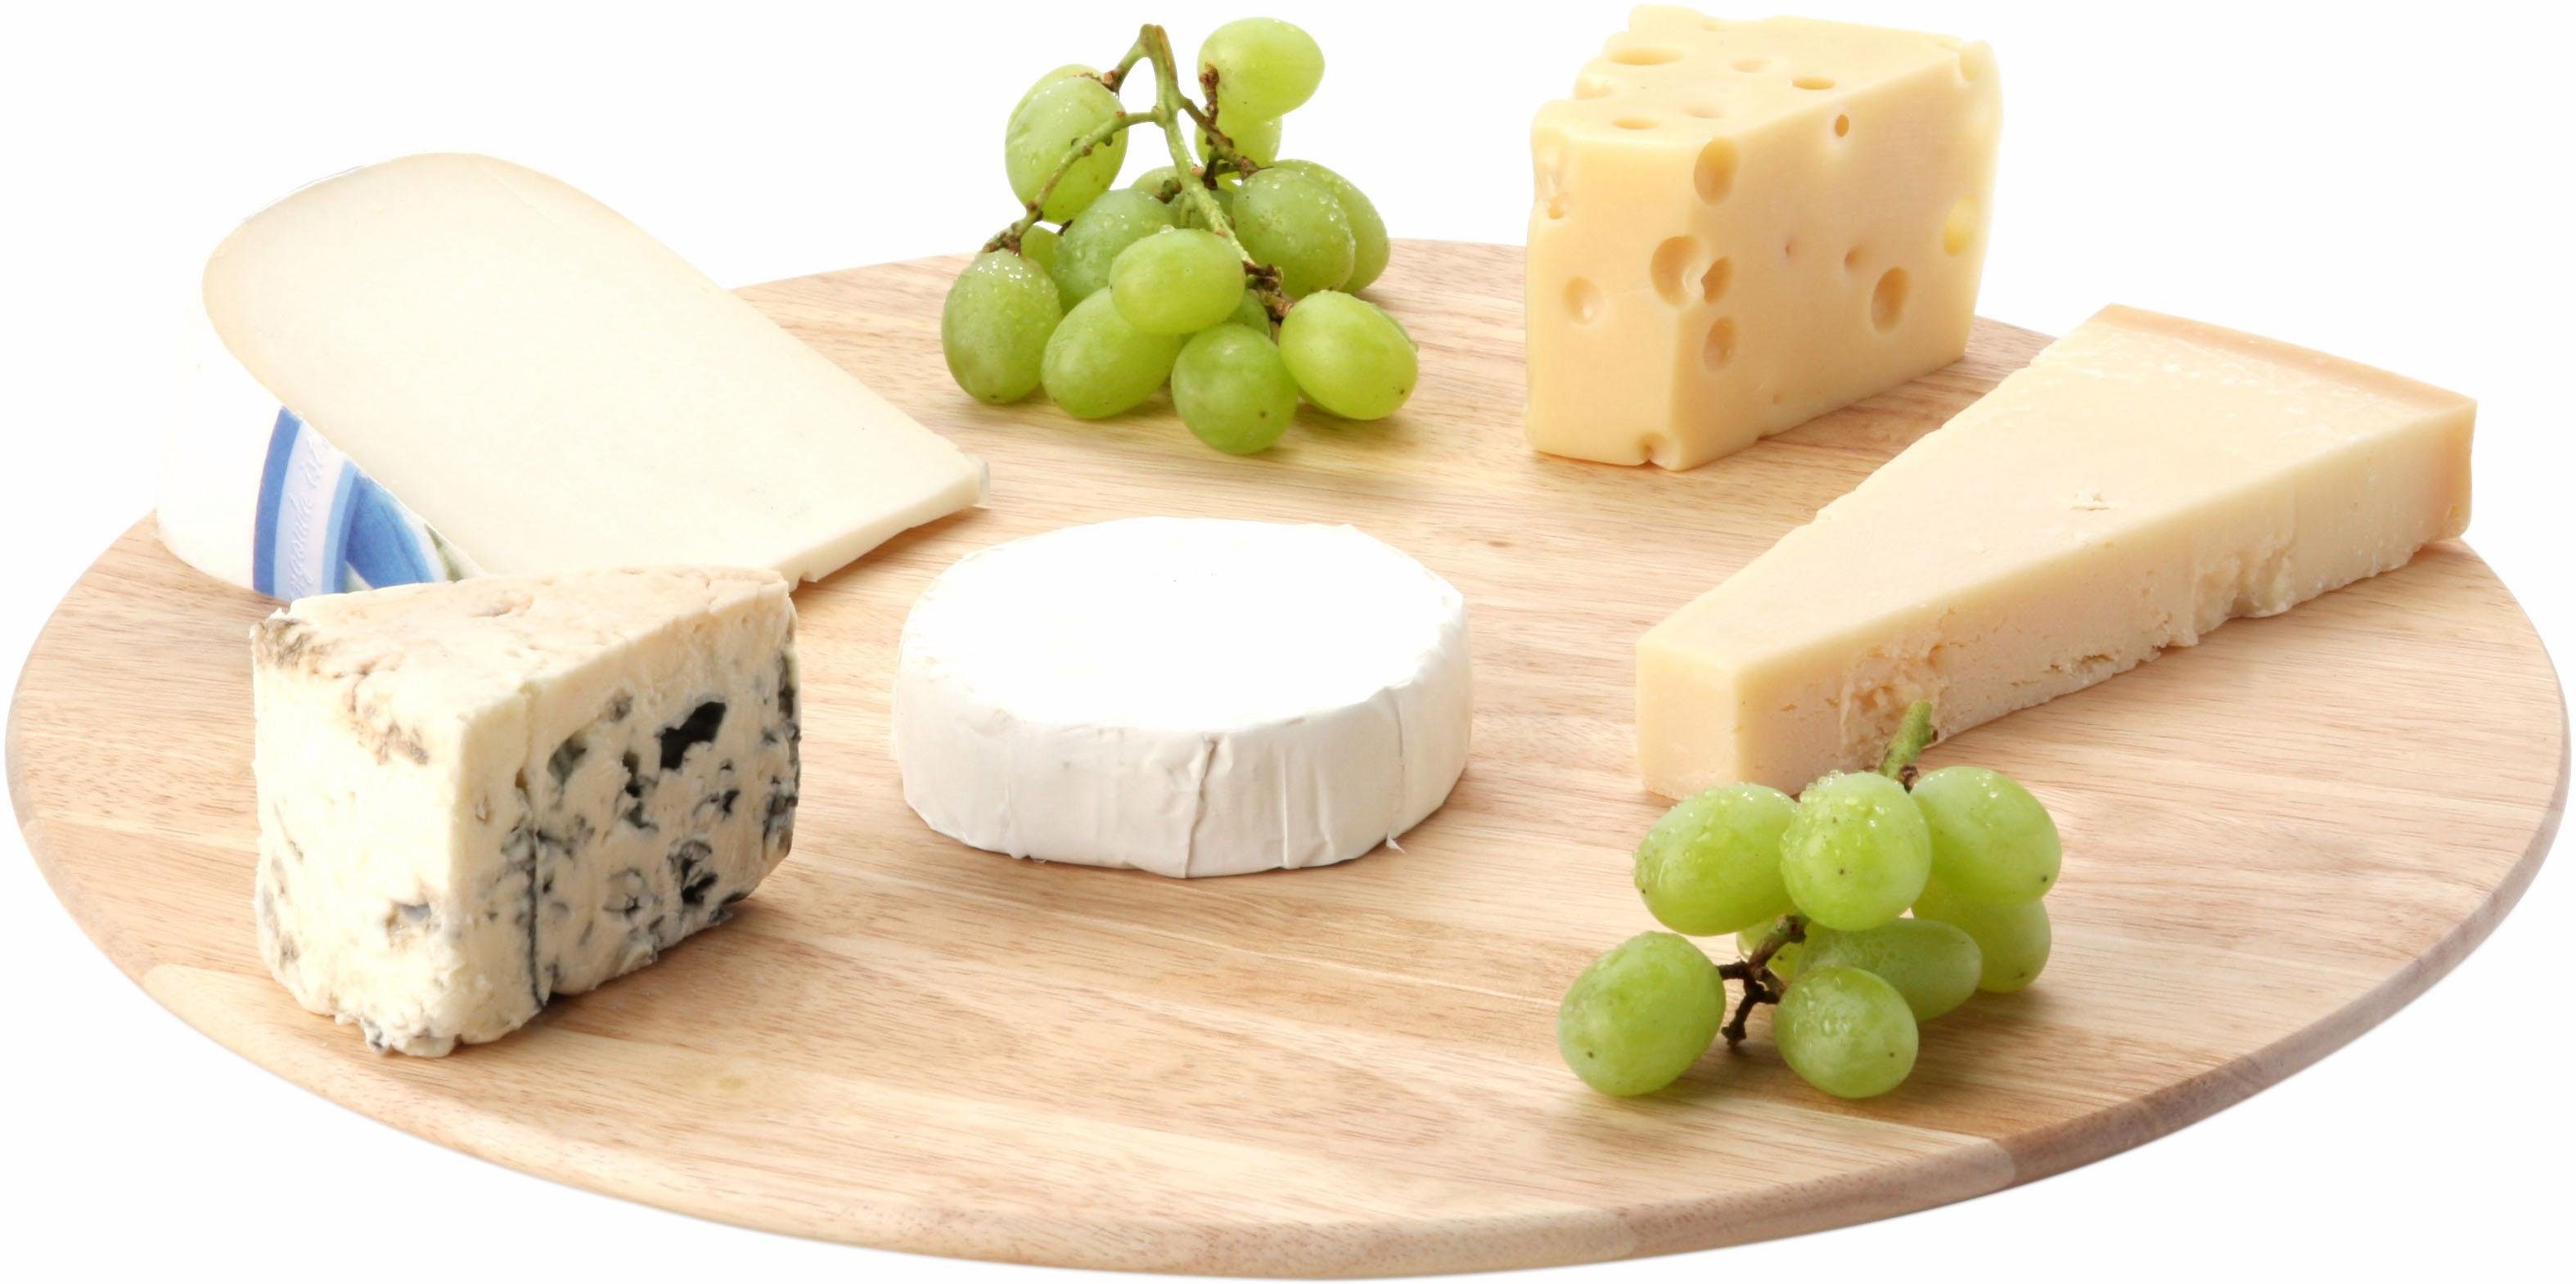 Continenta Servierbrett, zum Optimal Aufschnitt Käse, Hartholz, Handarbeit, Präsentieren von